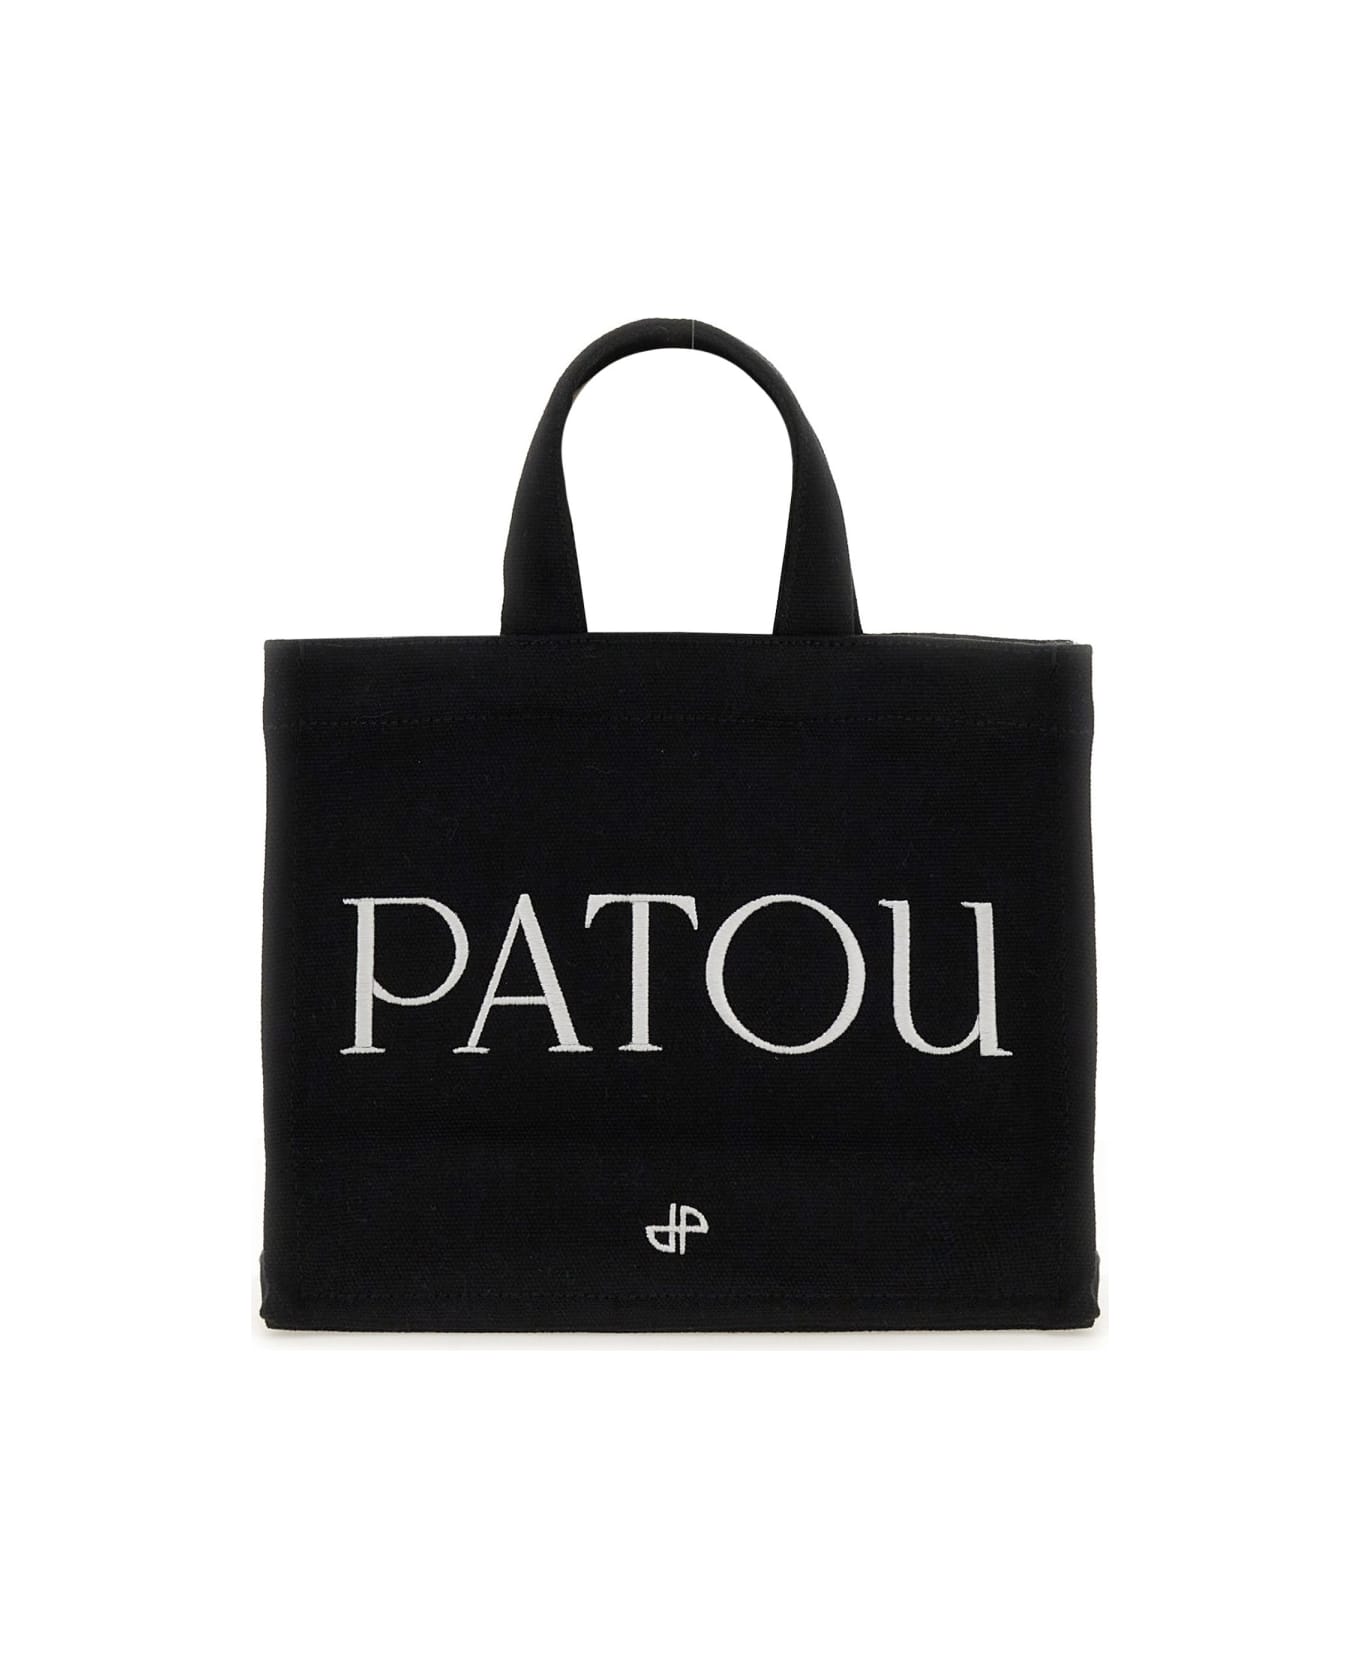 Patou Small 'patou' Tote Bag - Black トートバッグ